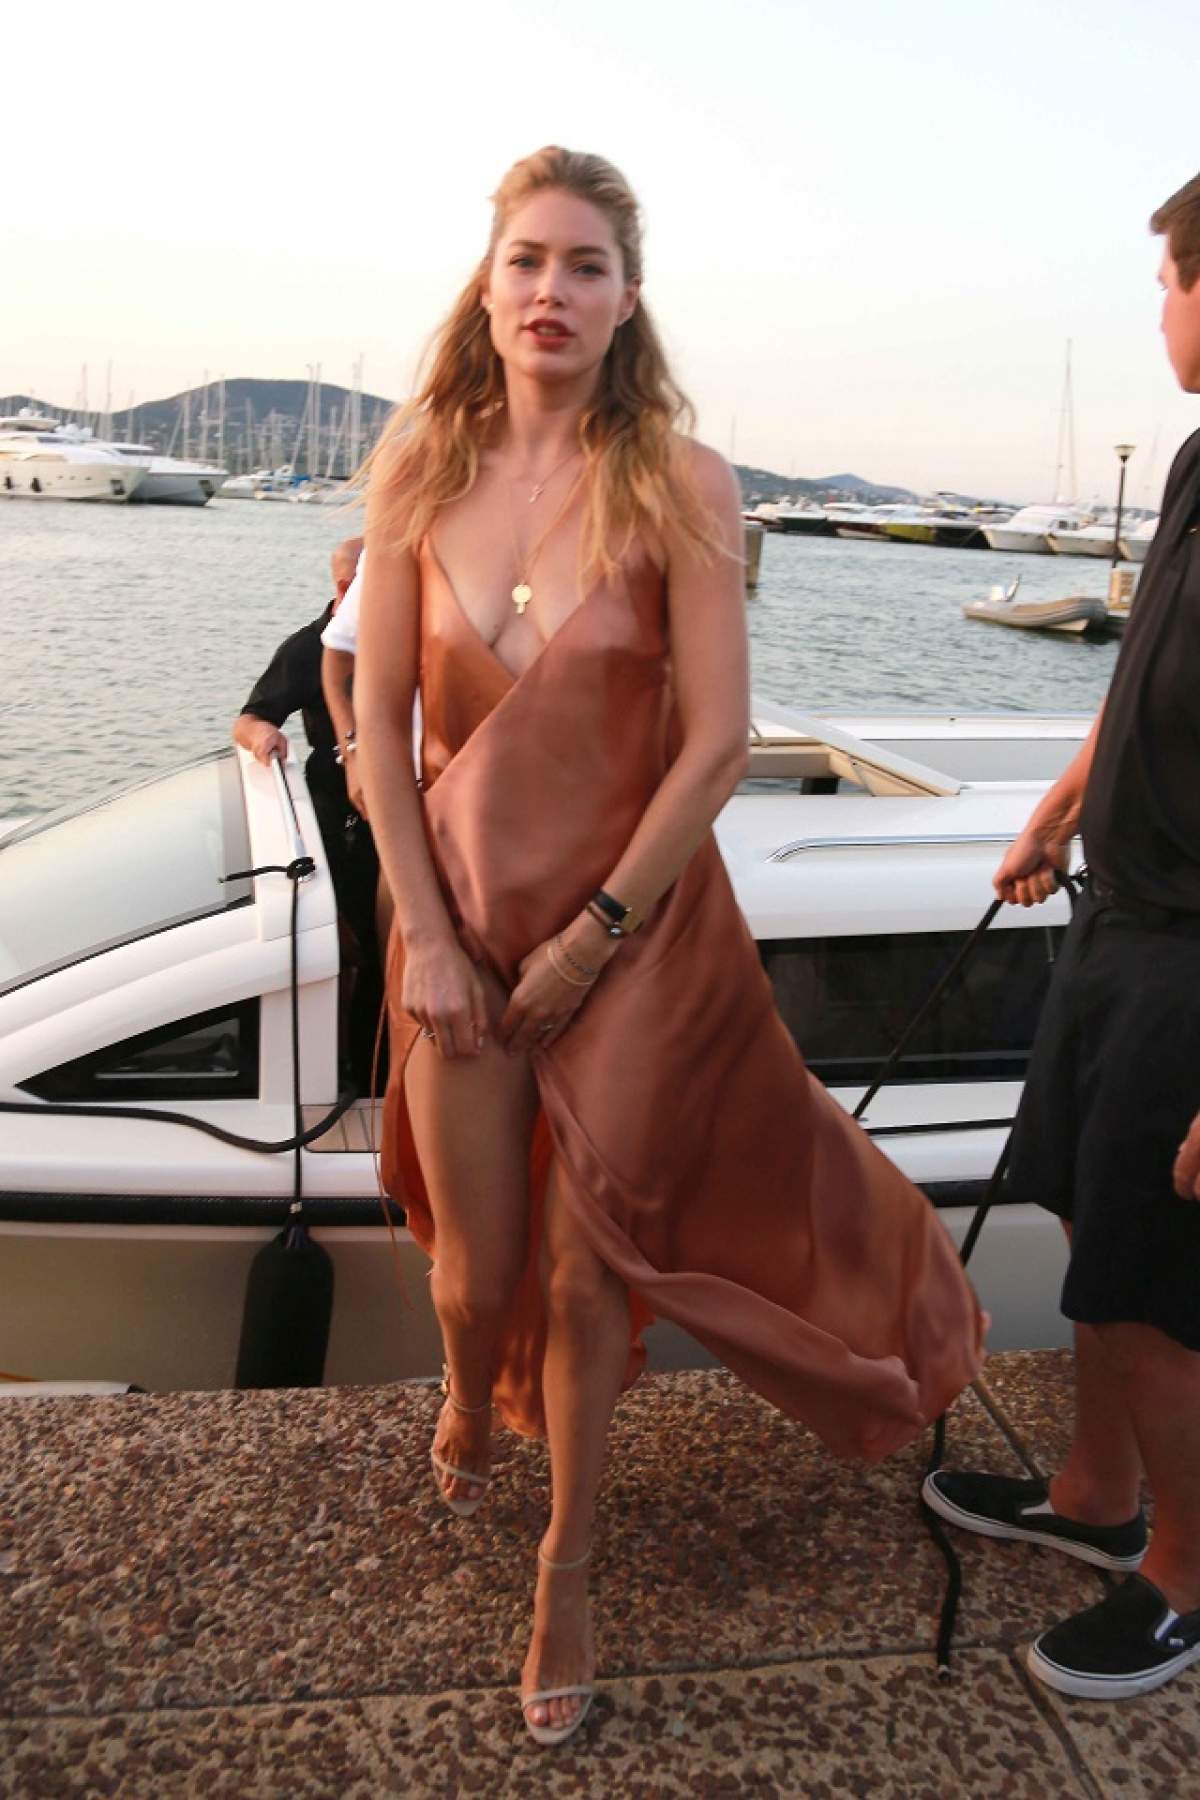 FOTO / Doutzen Kroes, supermodelul Victoria's Secret, la un pas să comită o gafă vestimentară! Rochia mult prea decupată a lăsat la vedere multă...piele